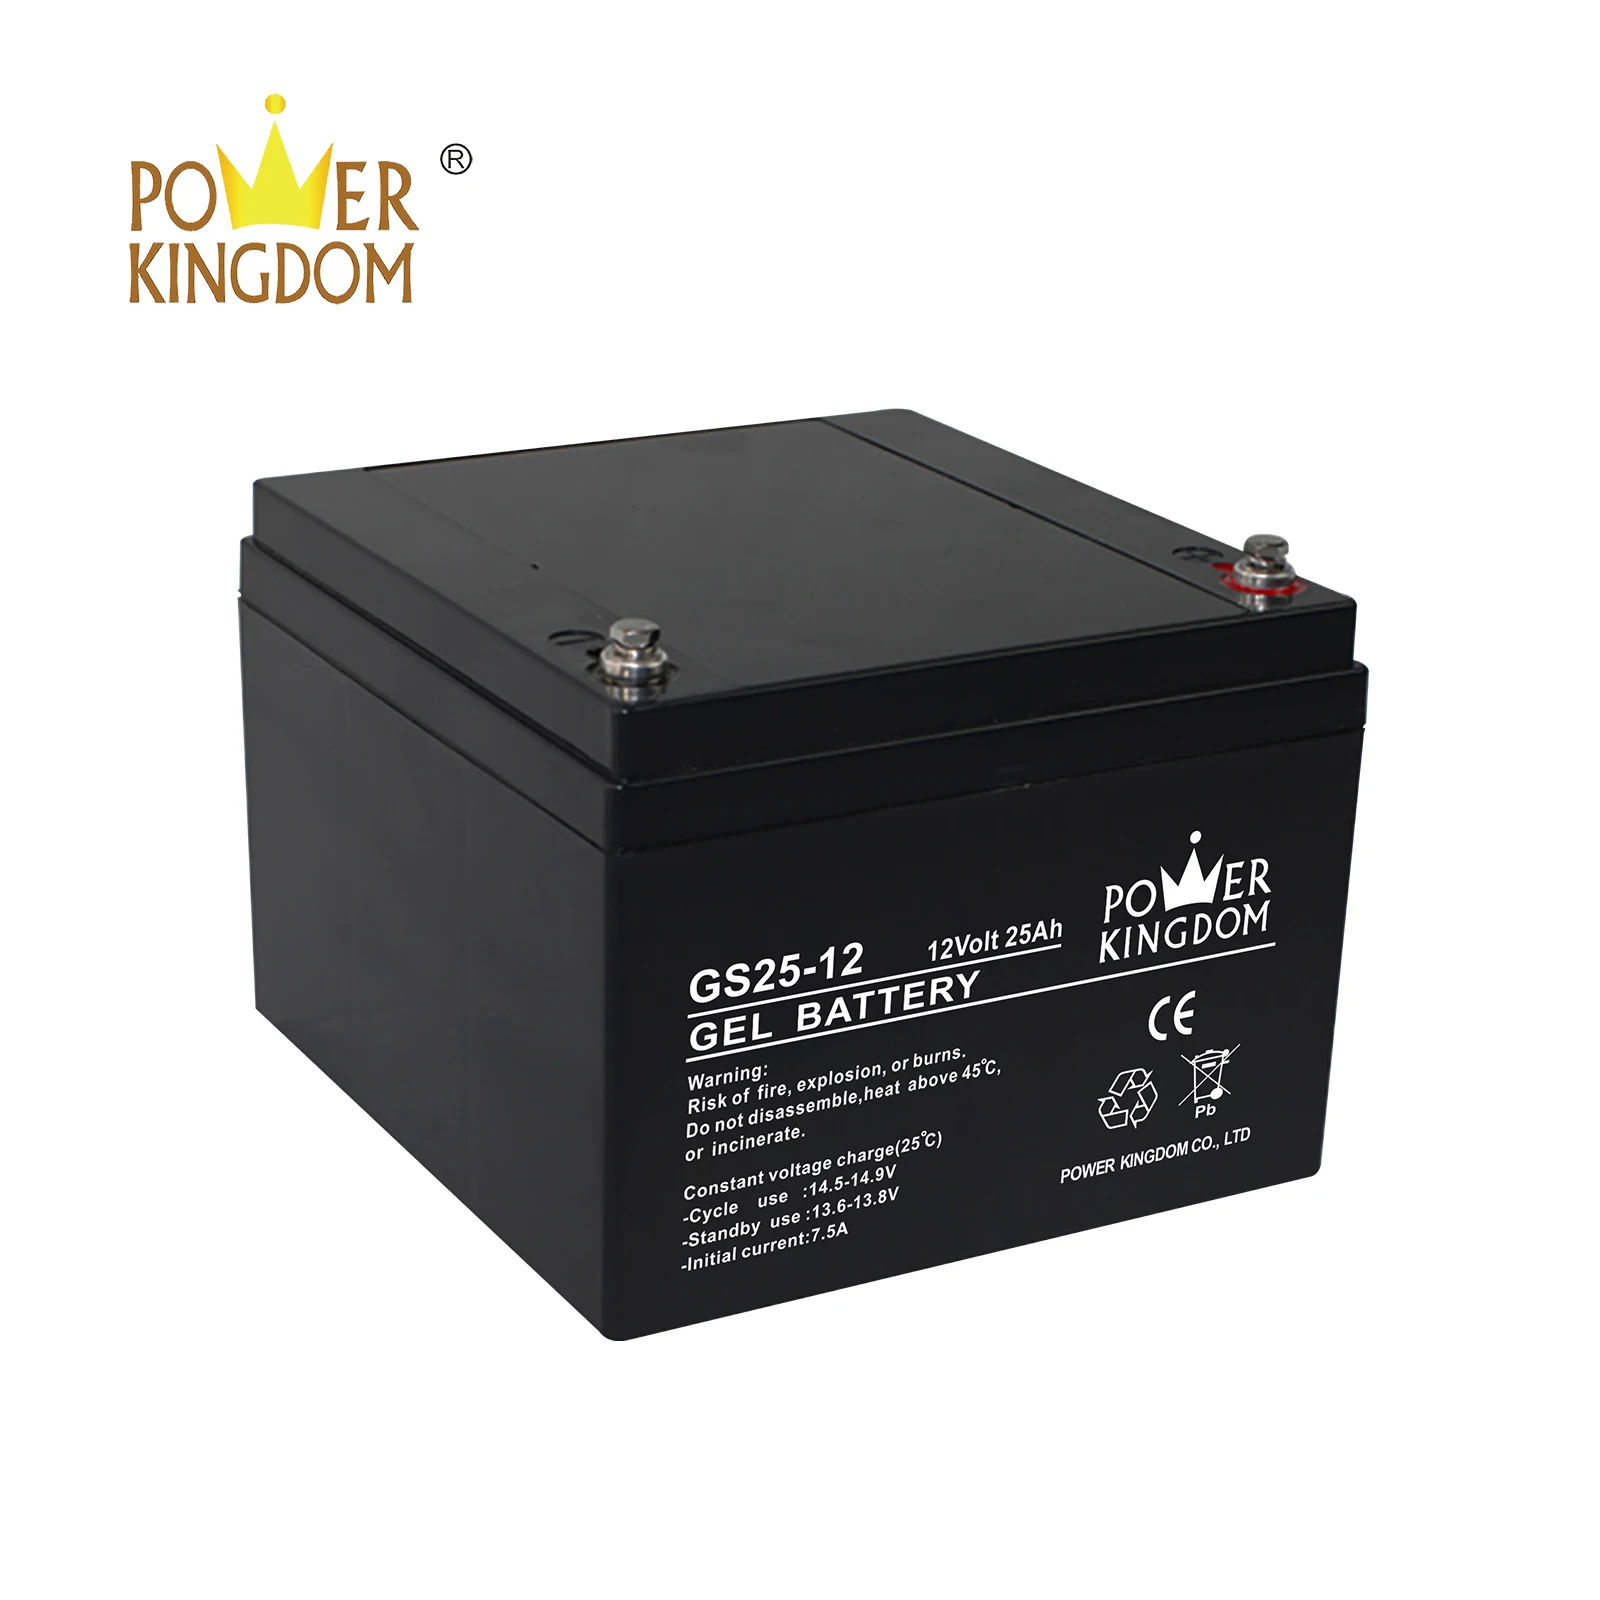 Power Kingdom 12v 28ah sealed lead acid battery factory solor system